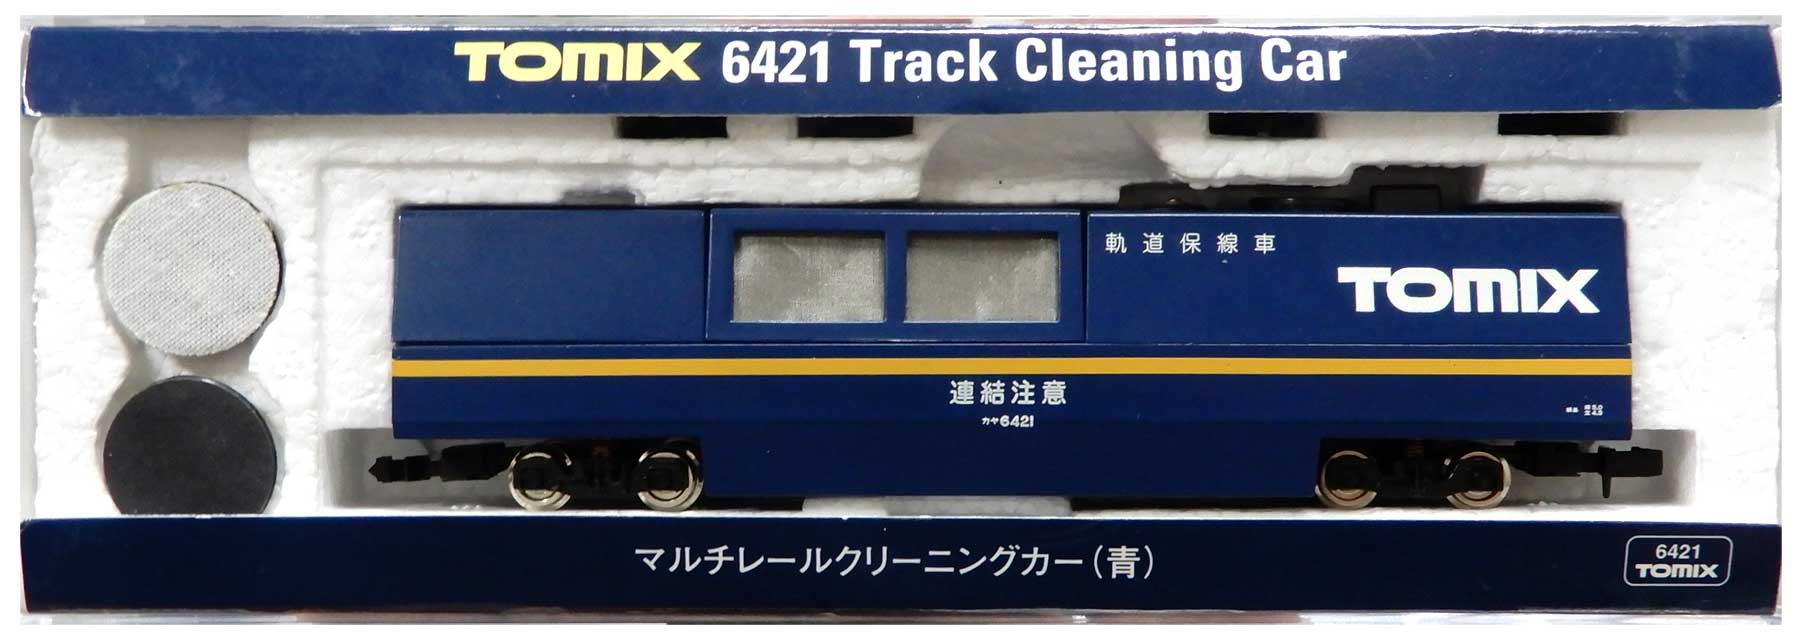 公式]鉄道模型(6421マルチレールクリーニングカー (青))商品詳細 